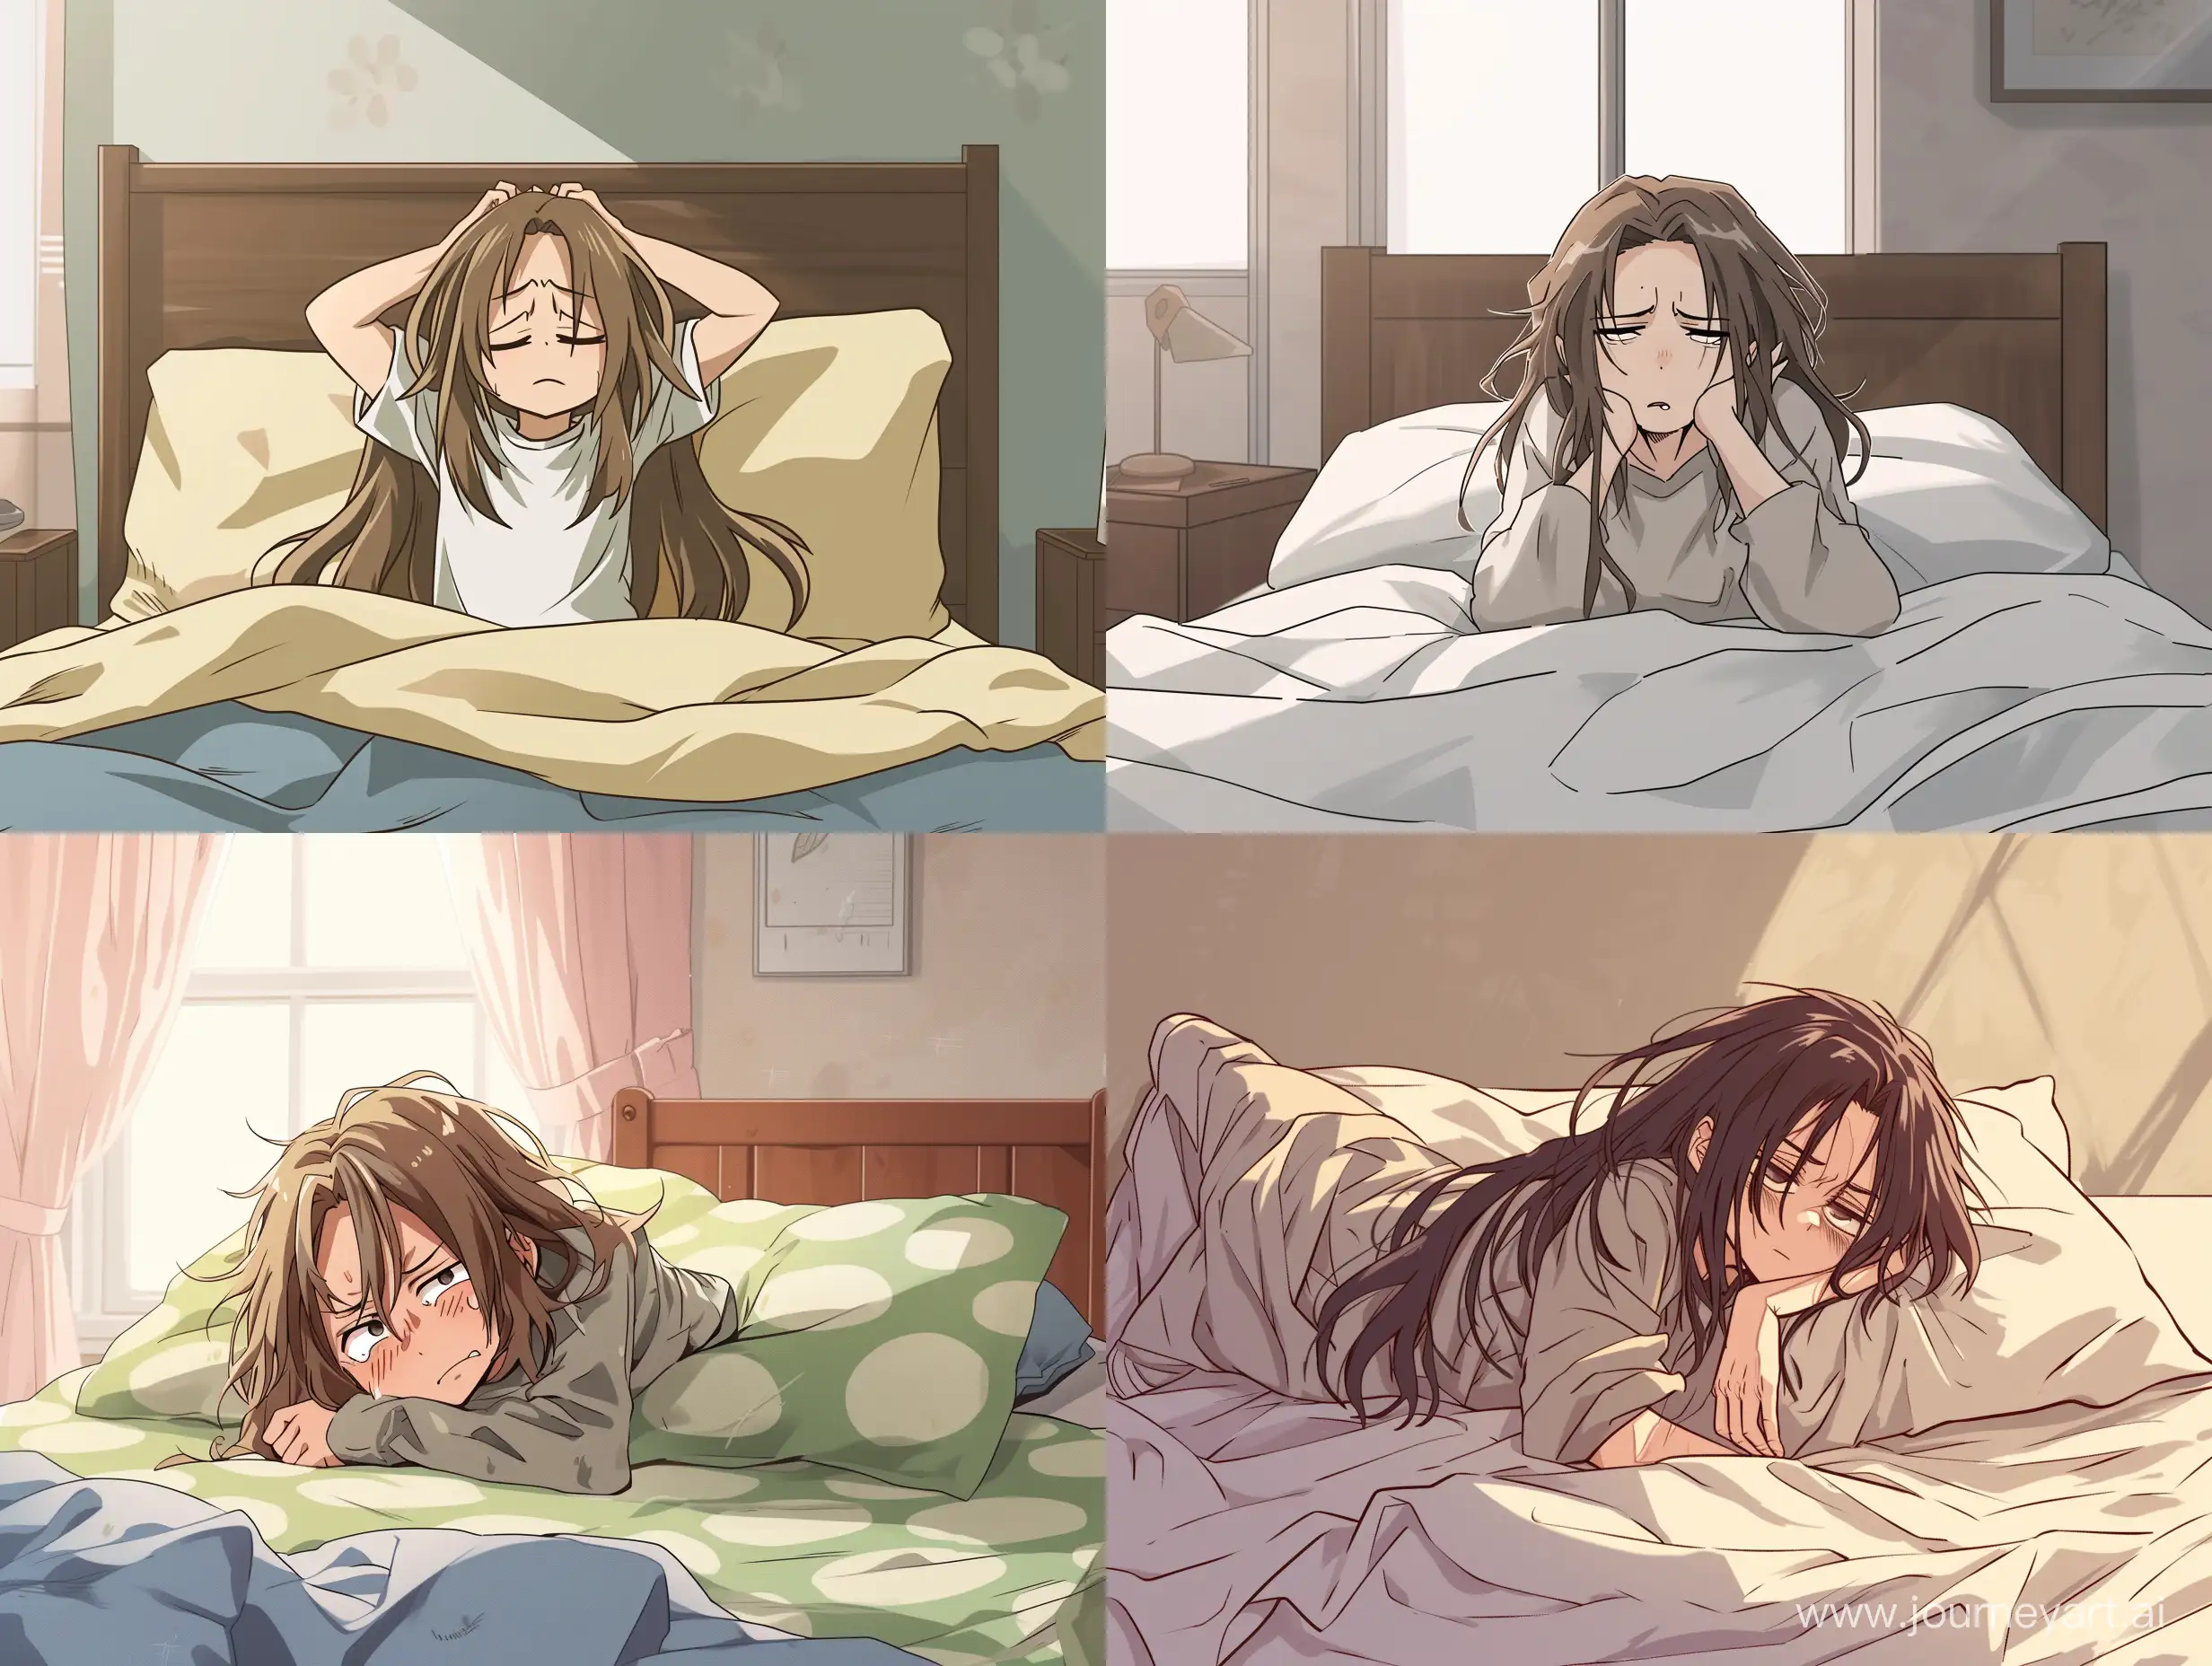 Brooding-LongHaired-Boy-Awakens-in-Anime-Bedroom-Scene